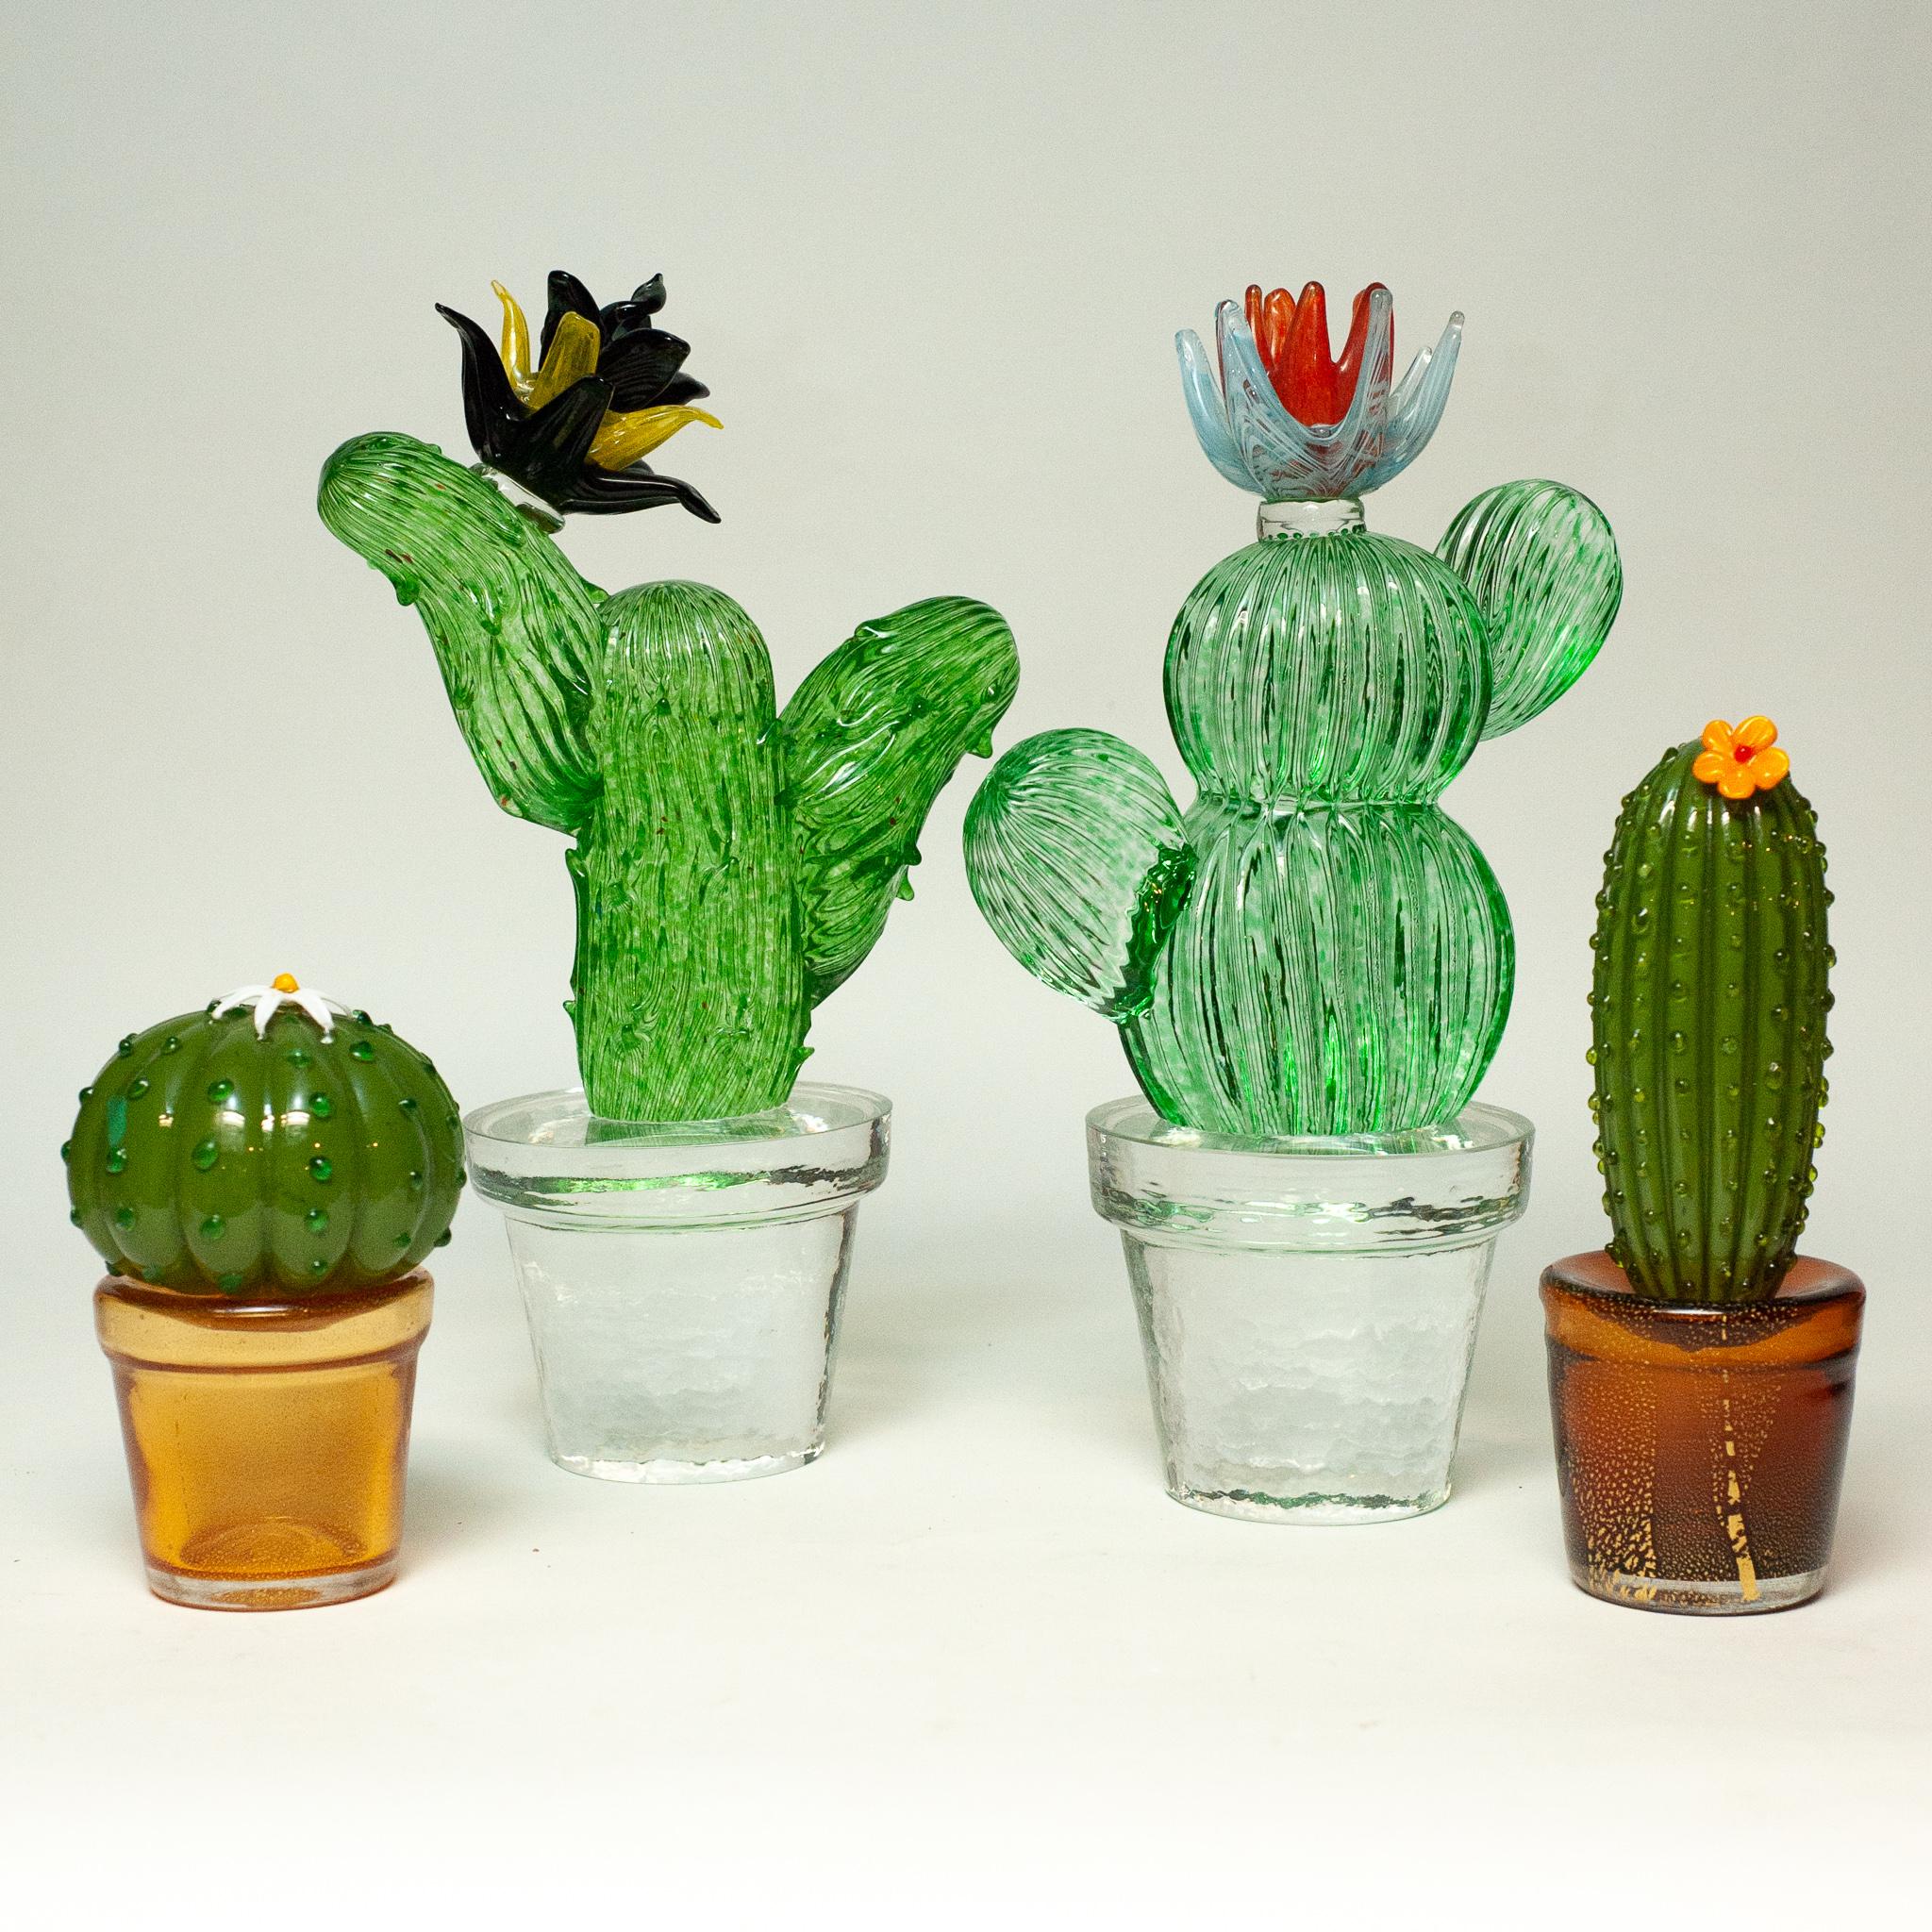 Un groupe étonnant de cactus en verre de Murano signés Marta Marzotto vers 1990 vient d'arriver à la Maison Nurita. Entièrement soufflées à la main dans du verre, ces sculptures inhabituelles et éclatantes ont été réalisées par le célèbre créateur